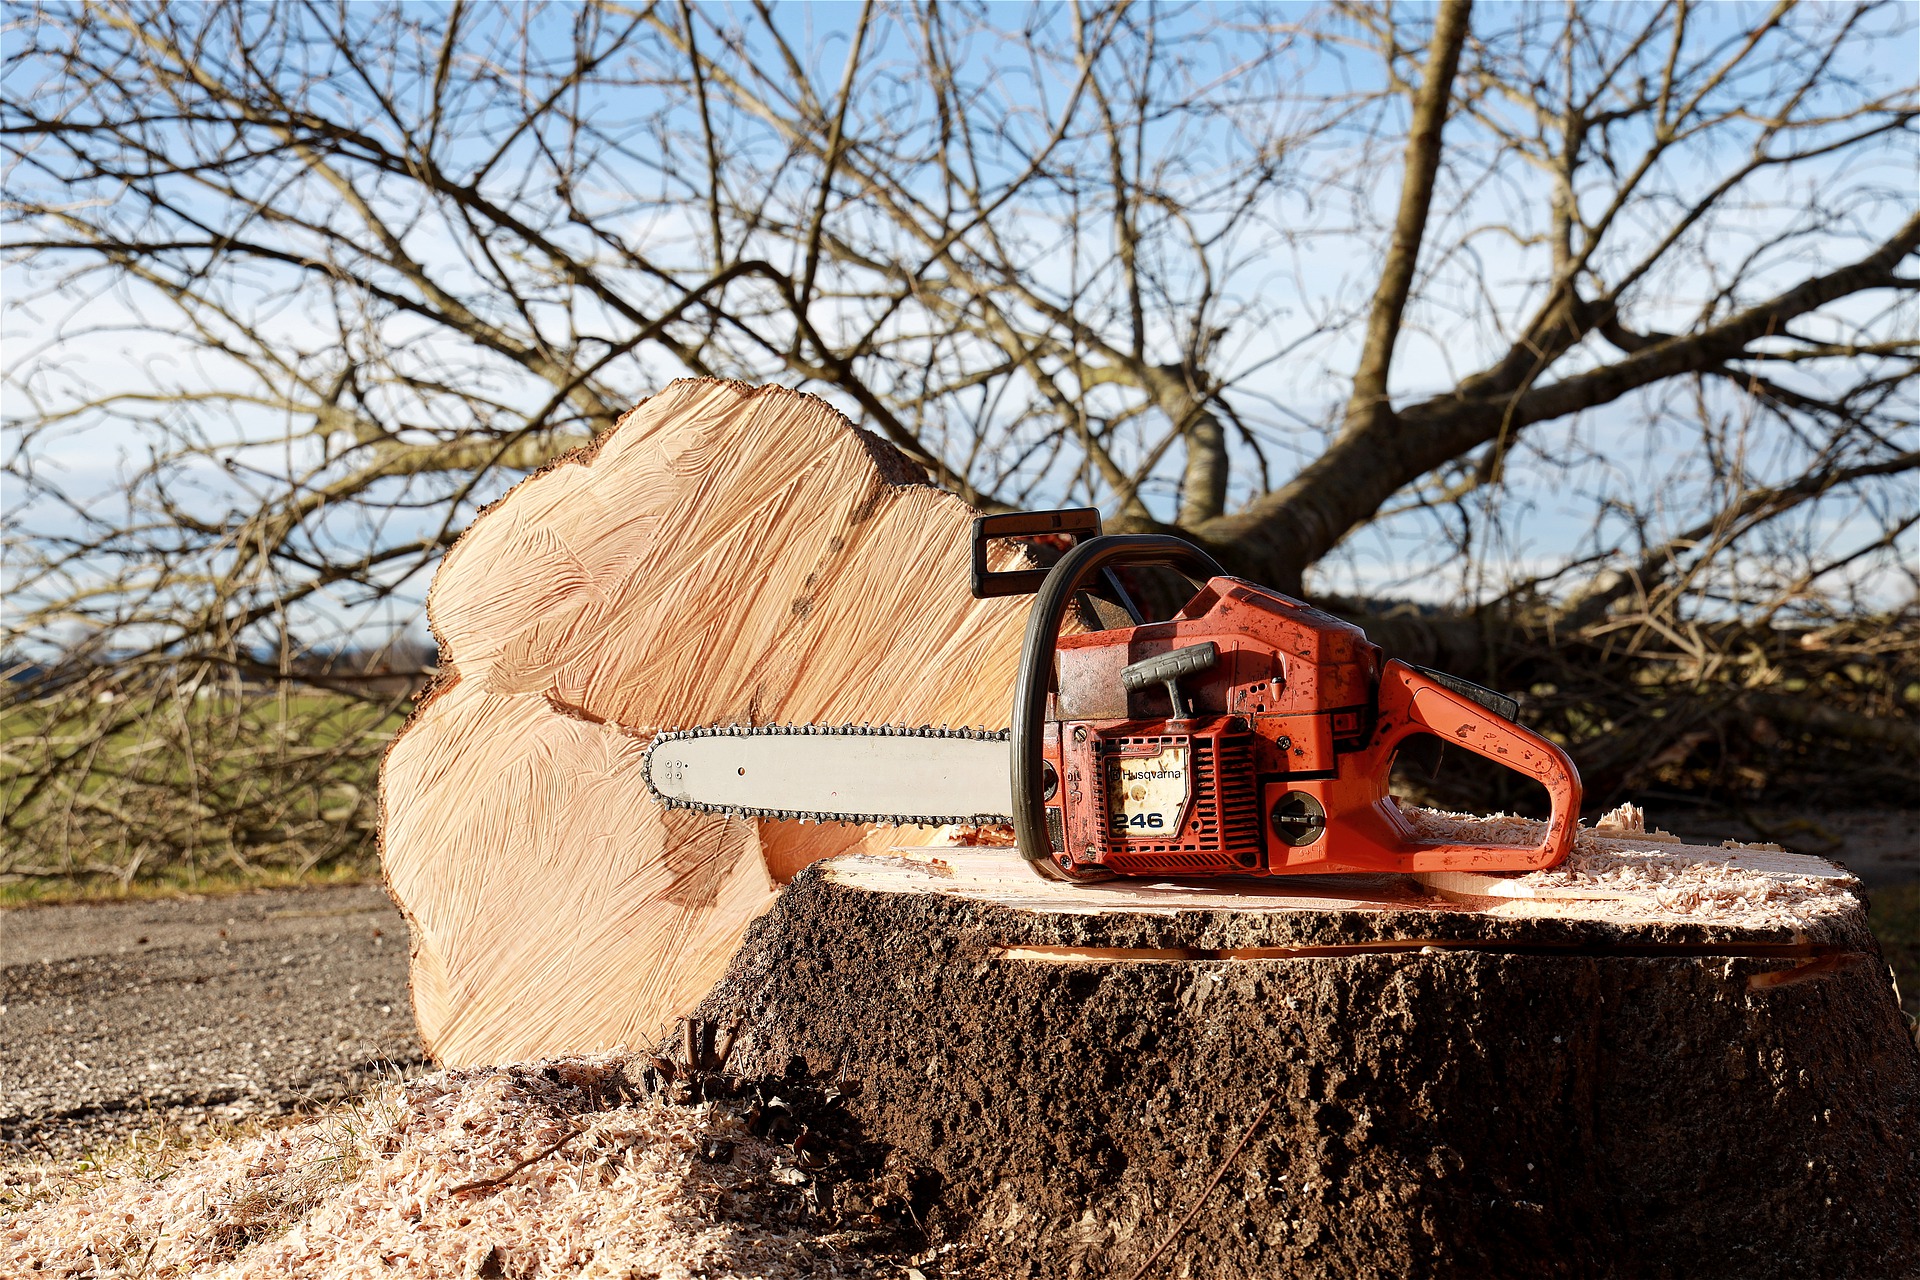 Более 700 деревьев незаконно вырубили в Шарковщинском районе, возбуждены уголовные дела